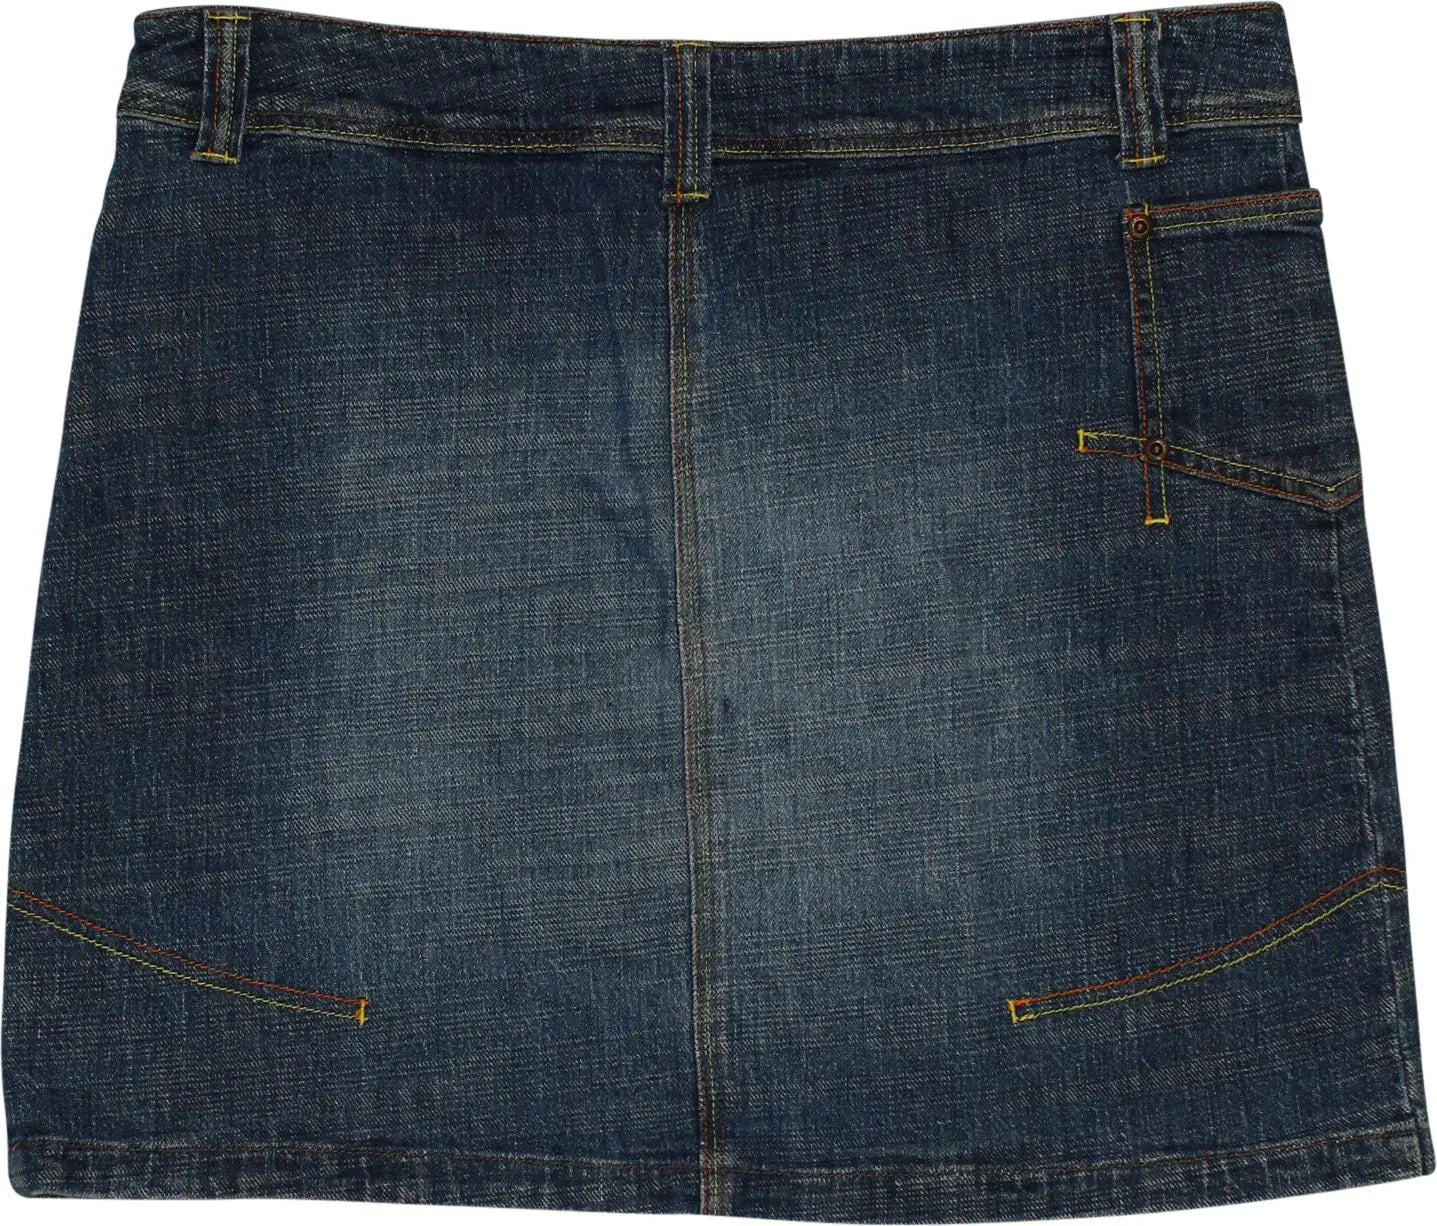 Ekseption - Denim Mini Skirt- ThriftTale.com - Vintage and second handclothing